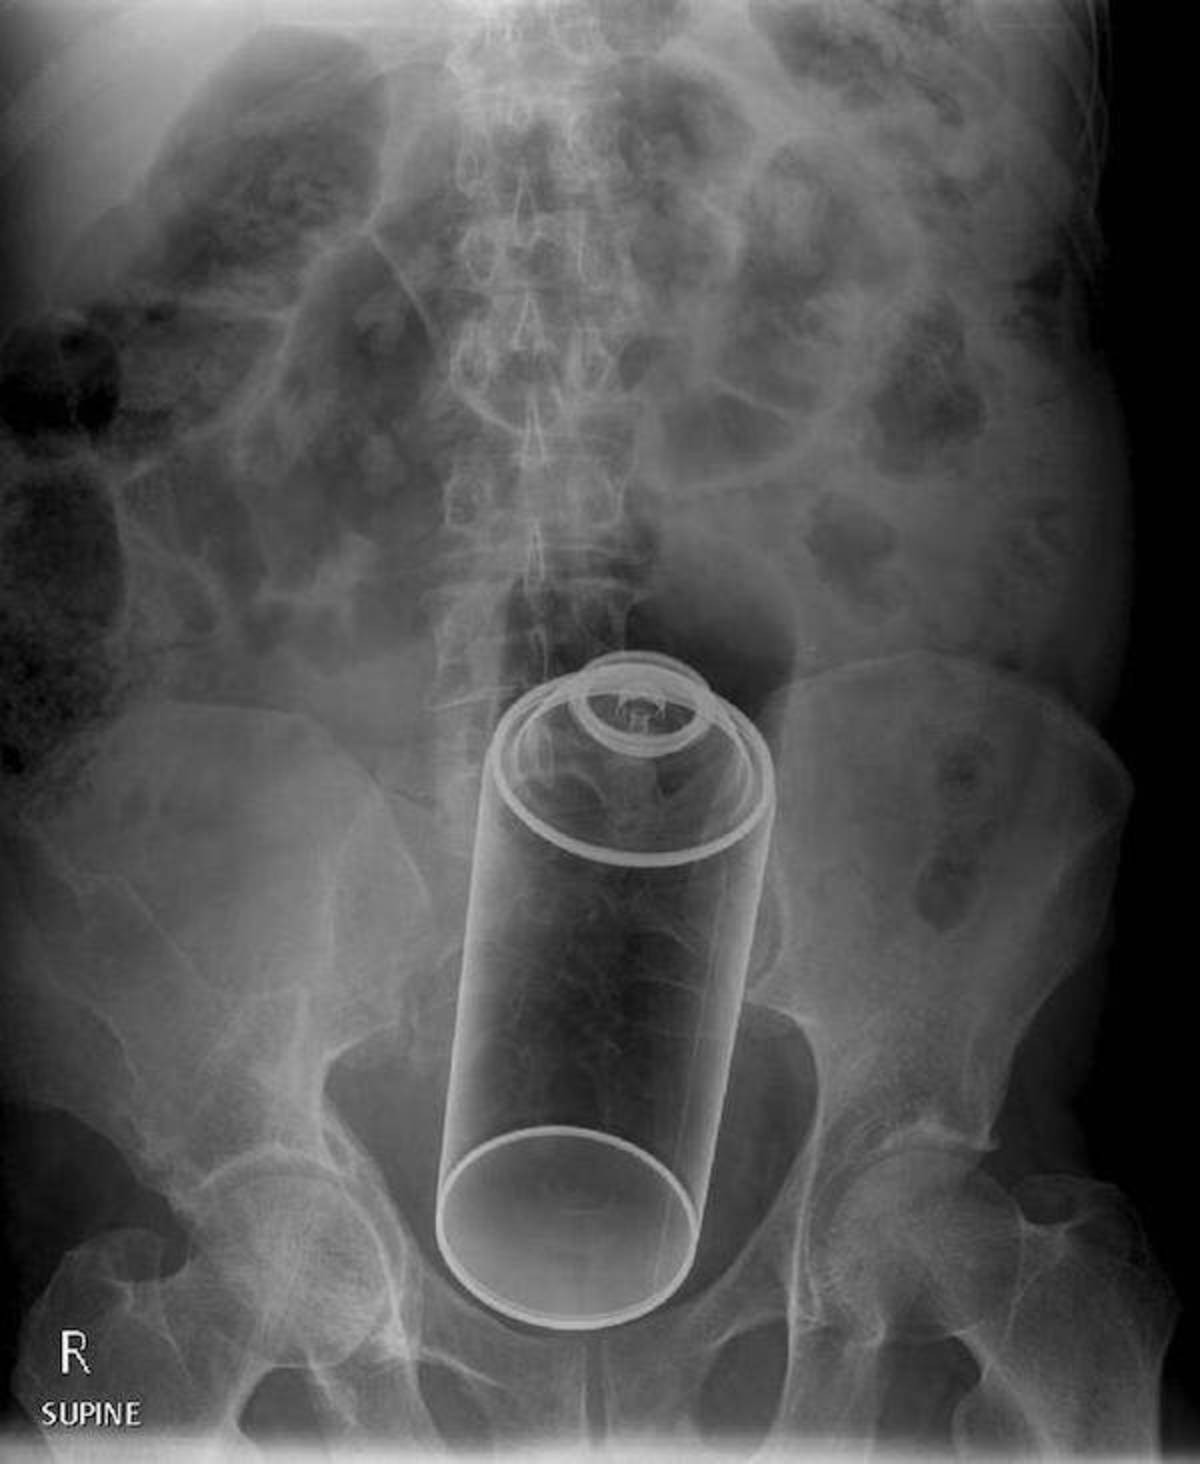 Рентген снимки с инородными телами в прямой кишке